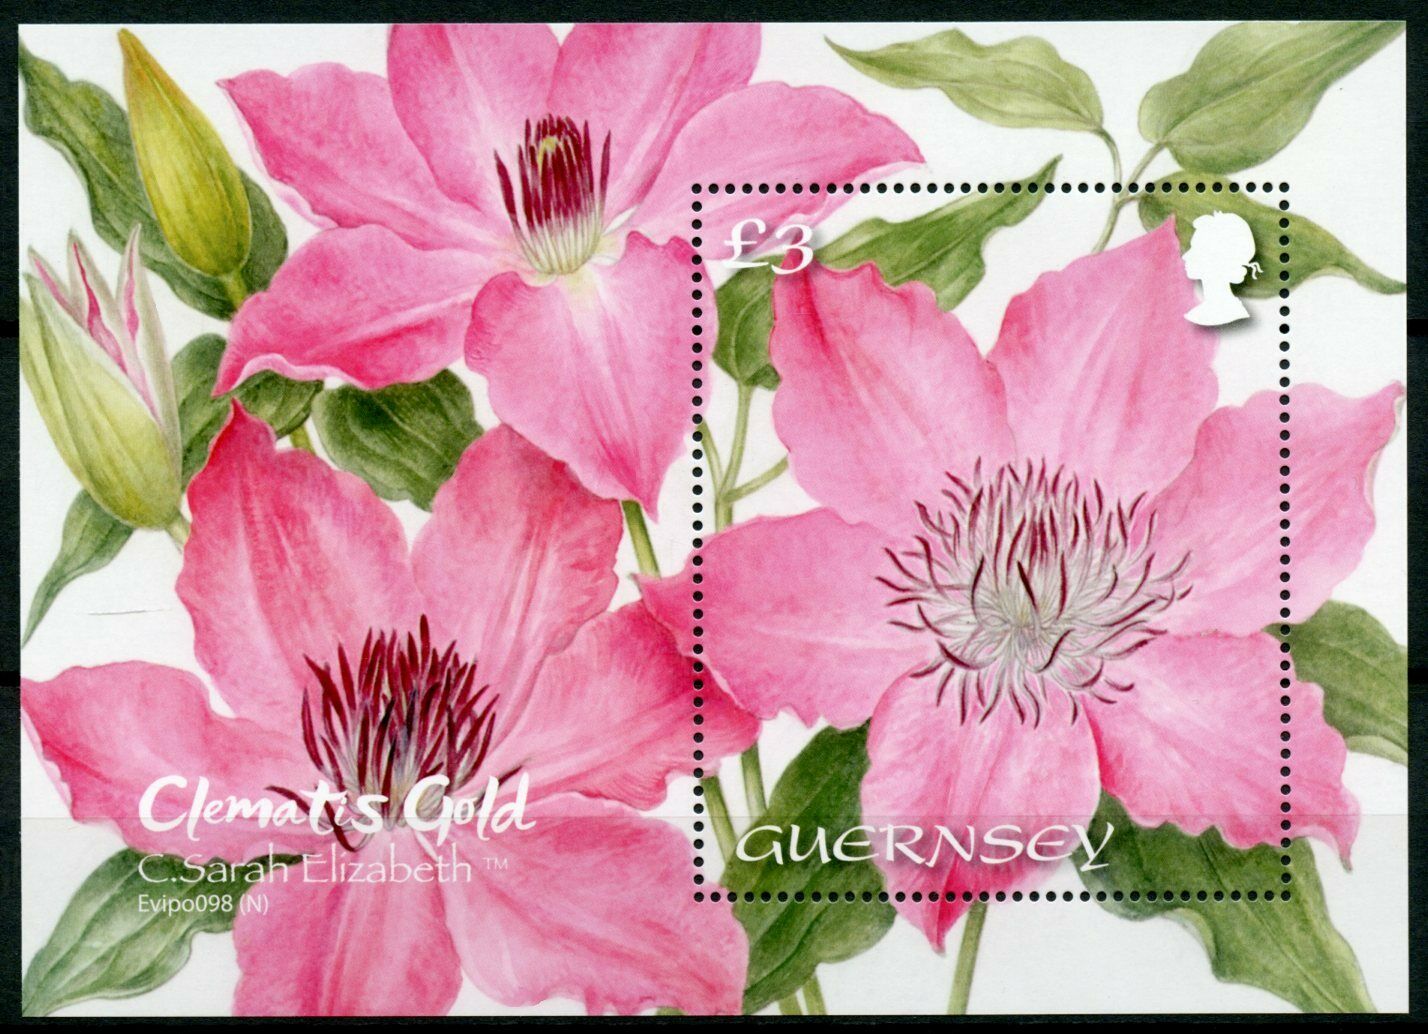 Guernsey Flowers Stamps 2021 MNH Clematis Gold C. Sarah Elizabeth Nature 1v M/S